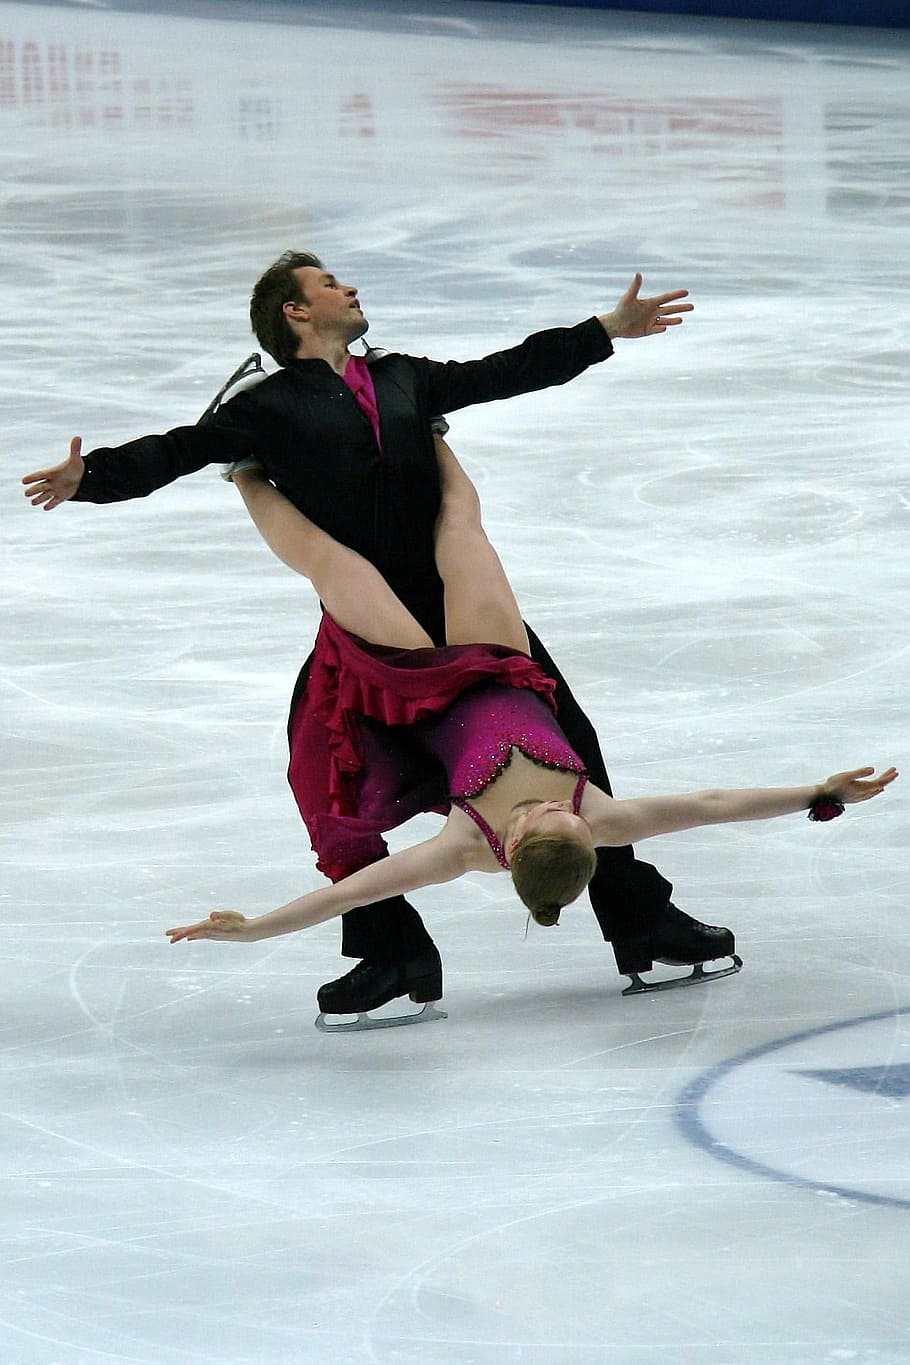 pameran ice skating, tokoh, skating, kejuaraan, menari, pasangan, pria, wanita, musim dingin, es